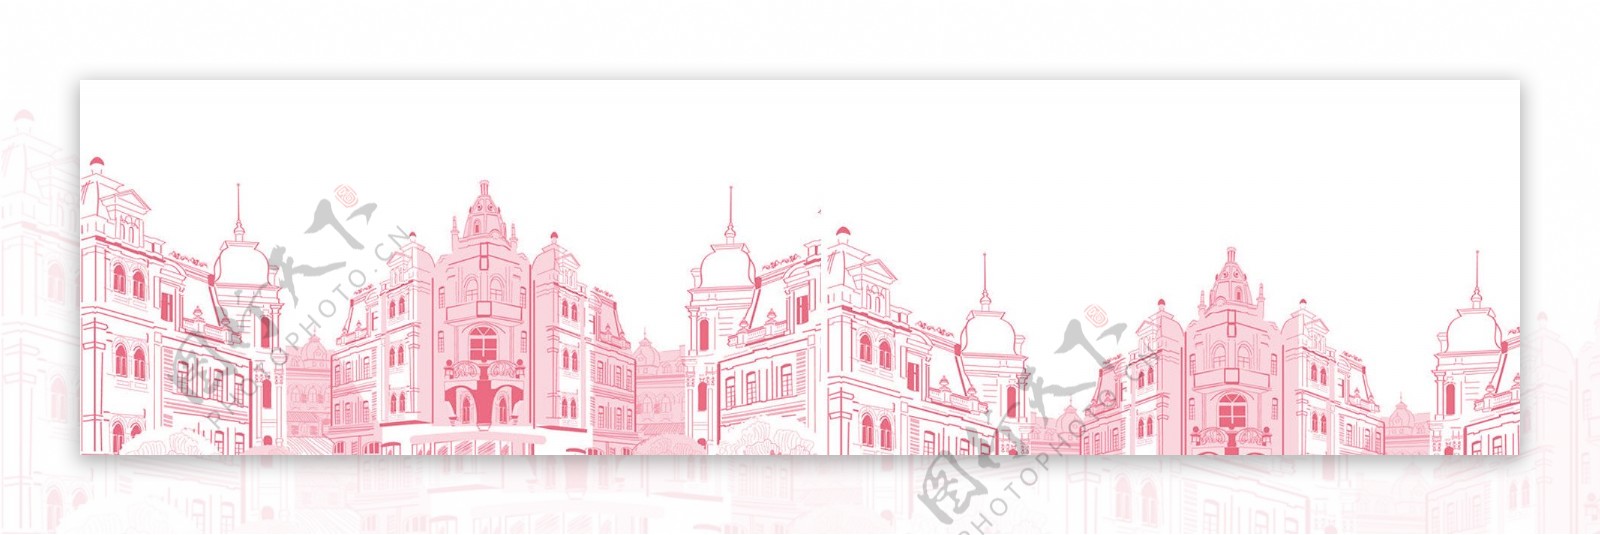 粉色城市建筑背景图